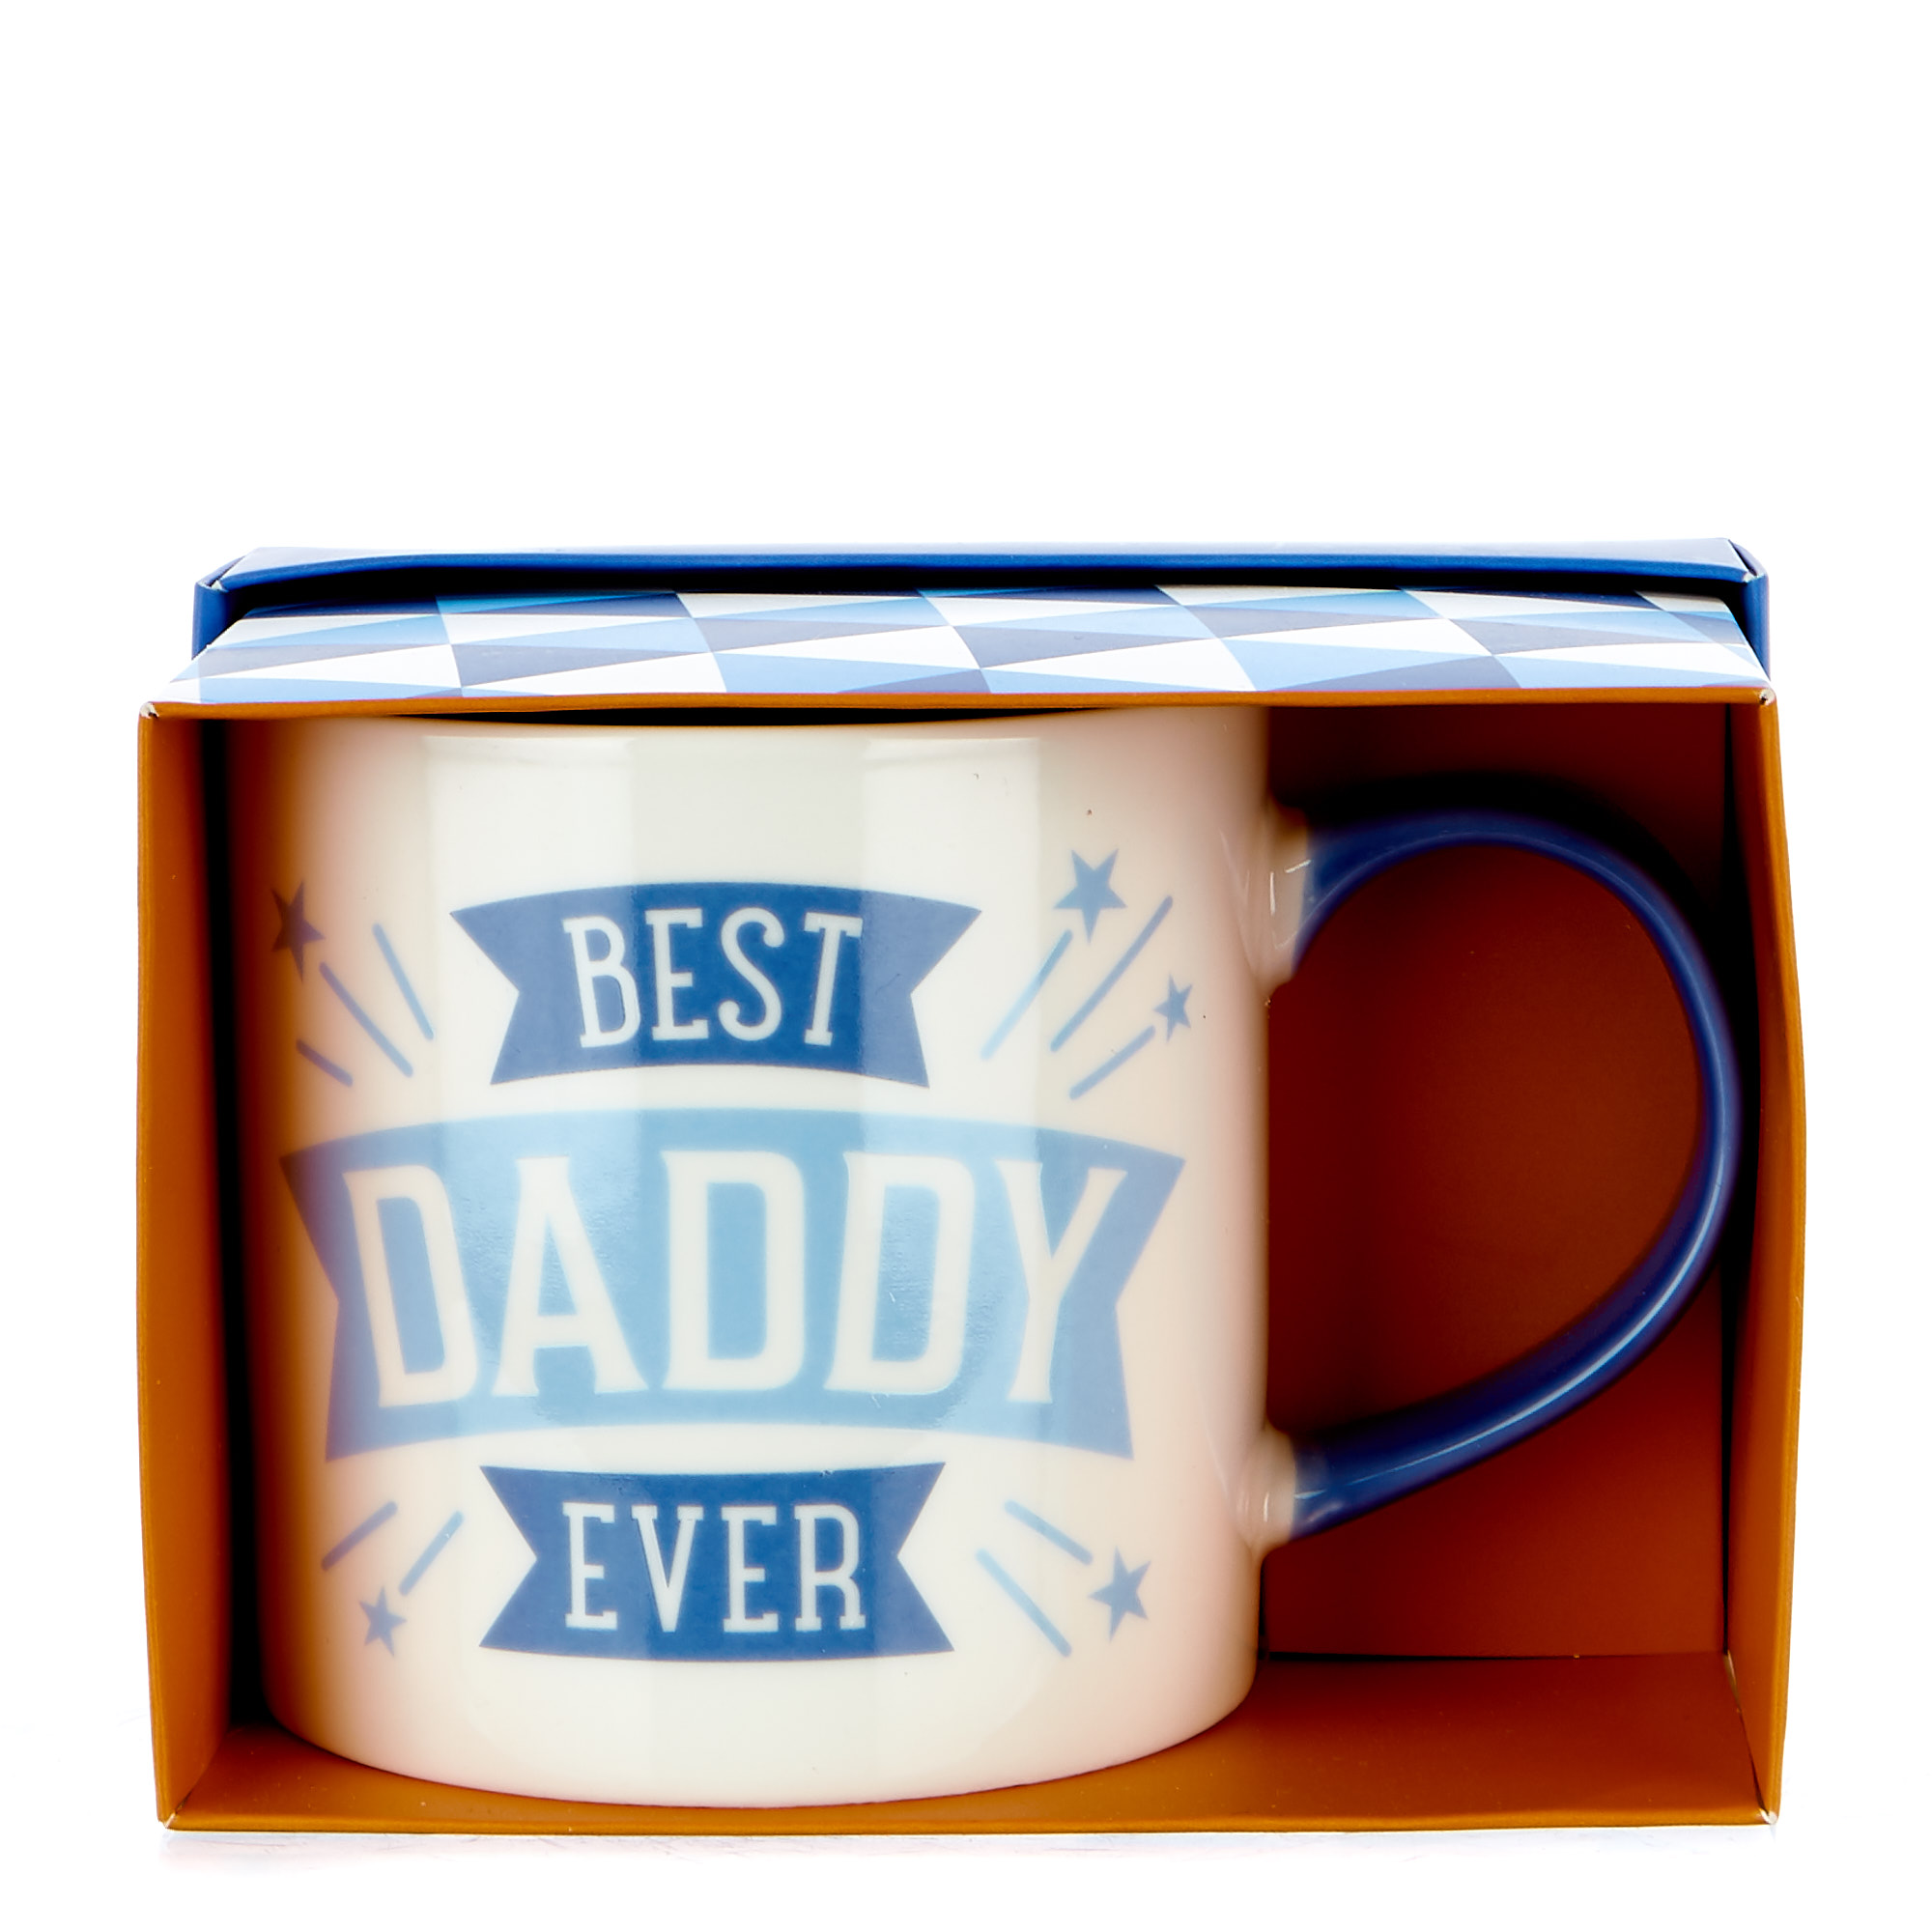 Best Daddy Ever Mug